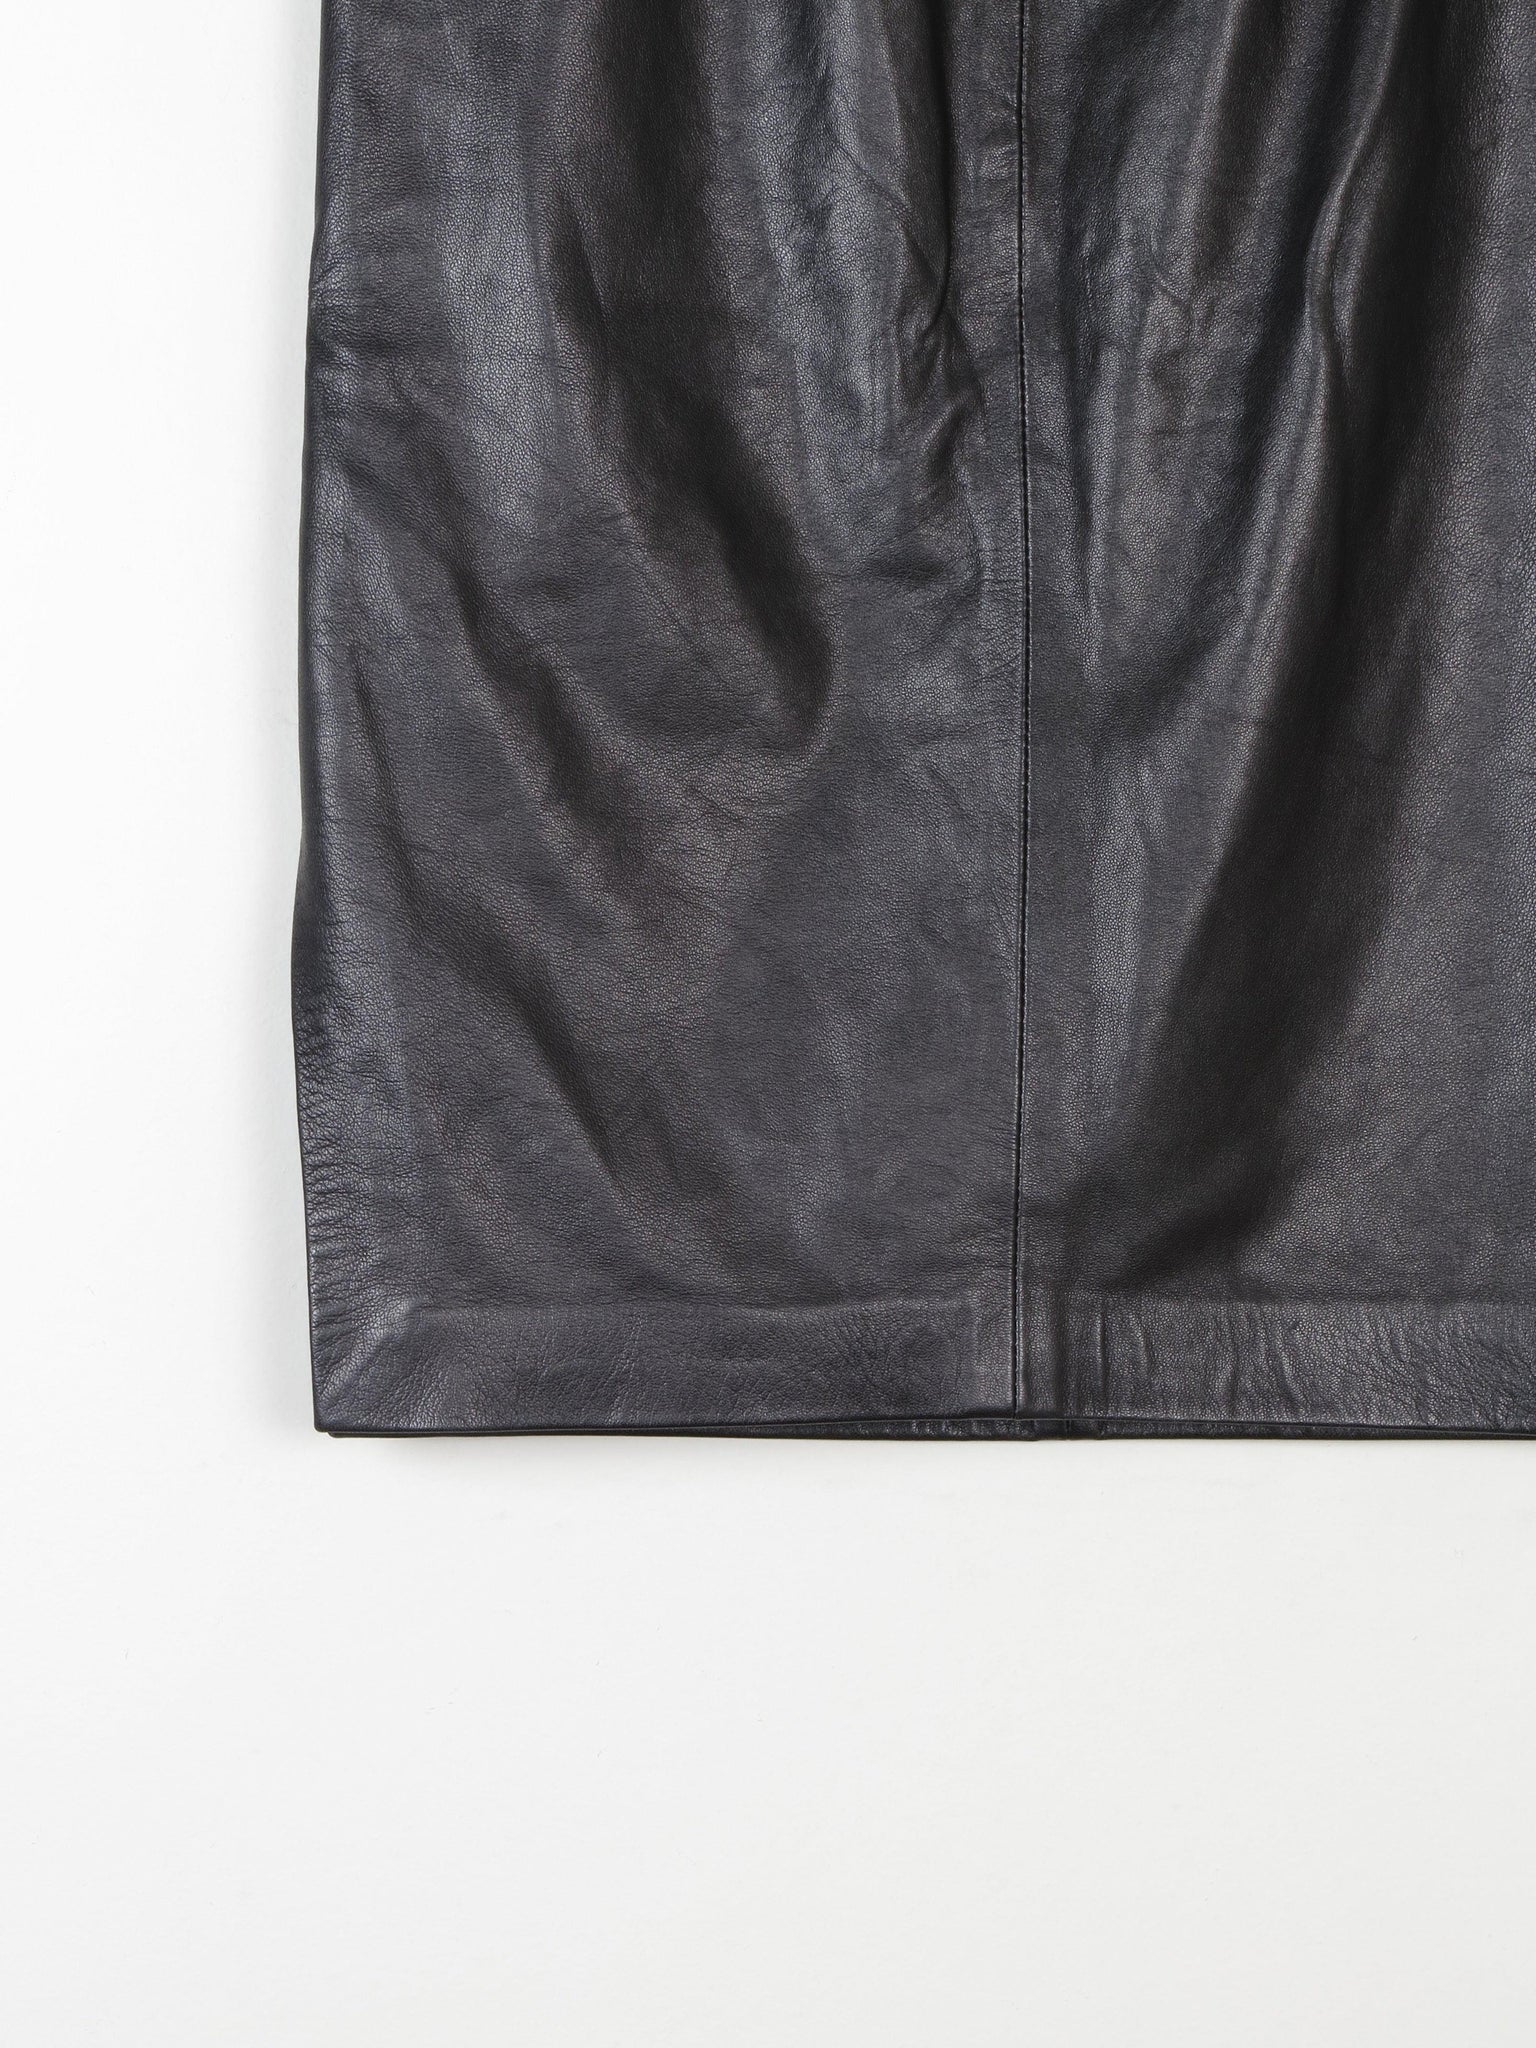 Black Leather Vintage Pencil Skirt 8/10 28" - The Harlequin